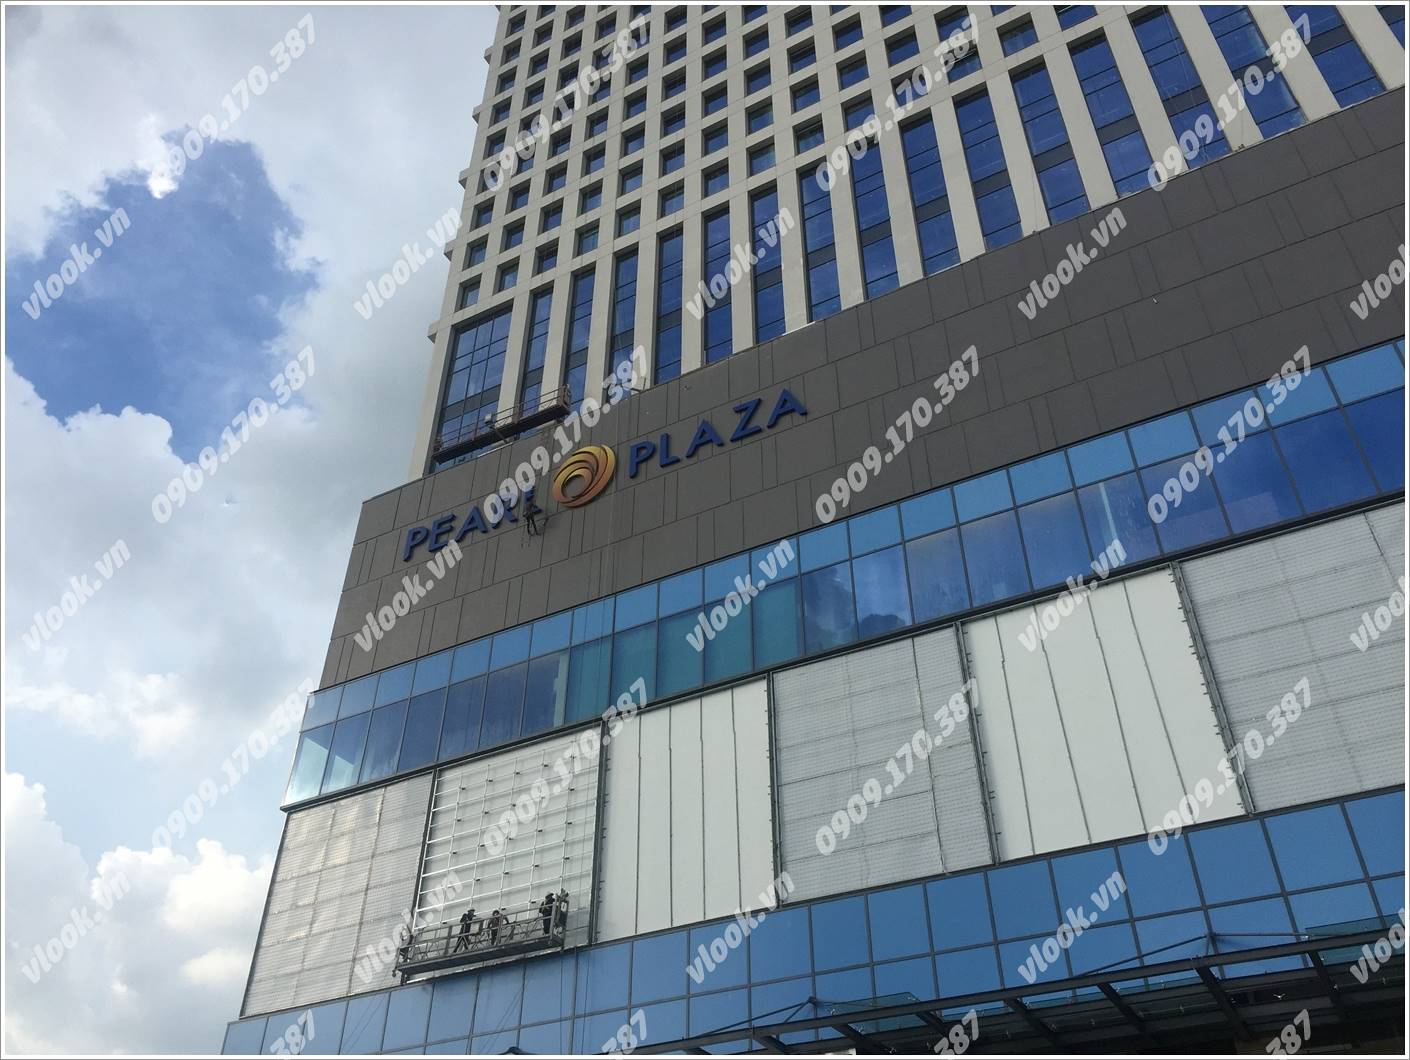 Cao ốc cho thuê văn phòng SSQ Tower, Điện Biên Phủ, Quận Bình Thạnh, TPHCM - vlook.vn